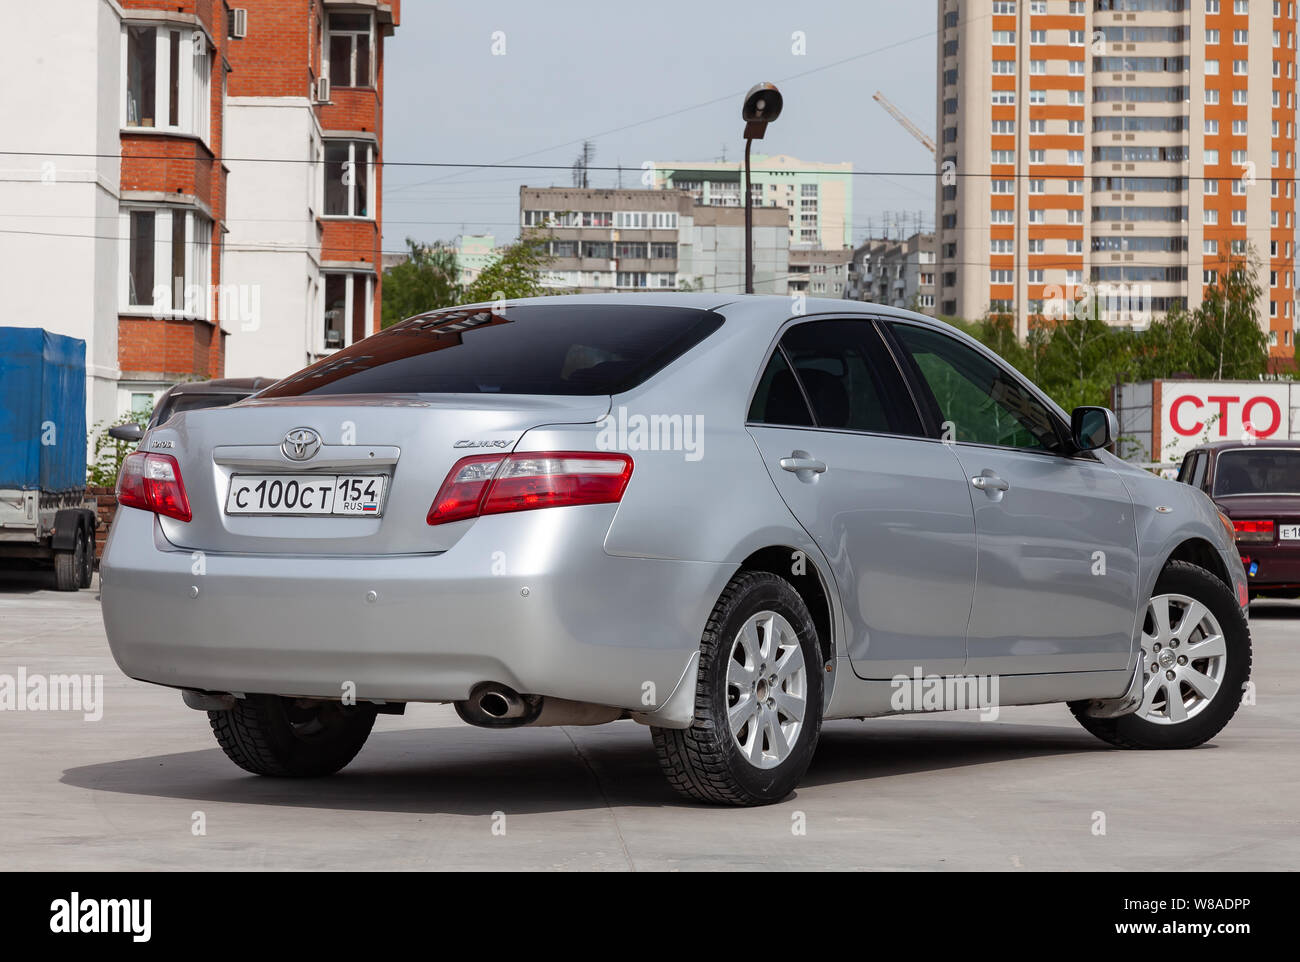 Nowosibirsk, Russland - 07.18.2019: Rückansicht des Toyota Camry 2006 in Silber nach der Reinigung vor dem Verkauf an einem sonnigen Tag auf dem Parkplatz Stockfoto